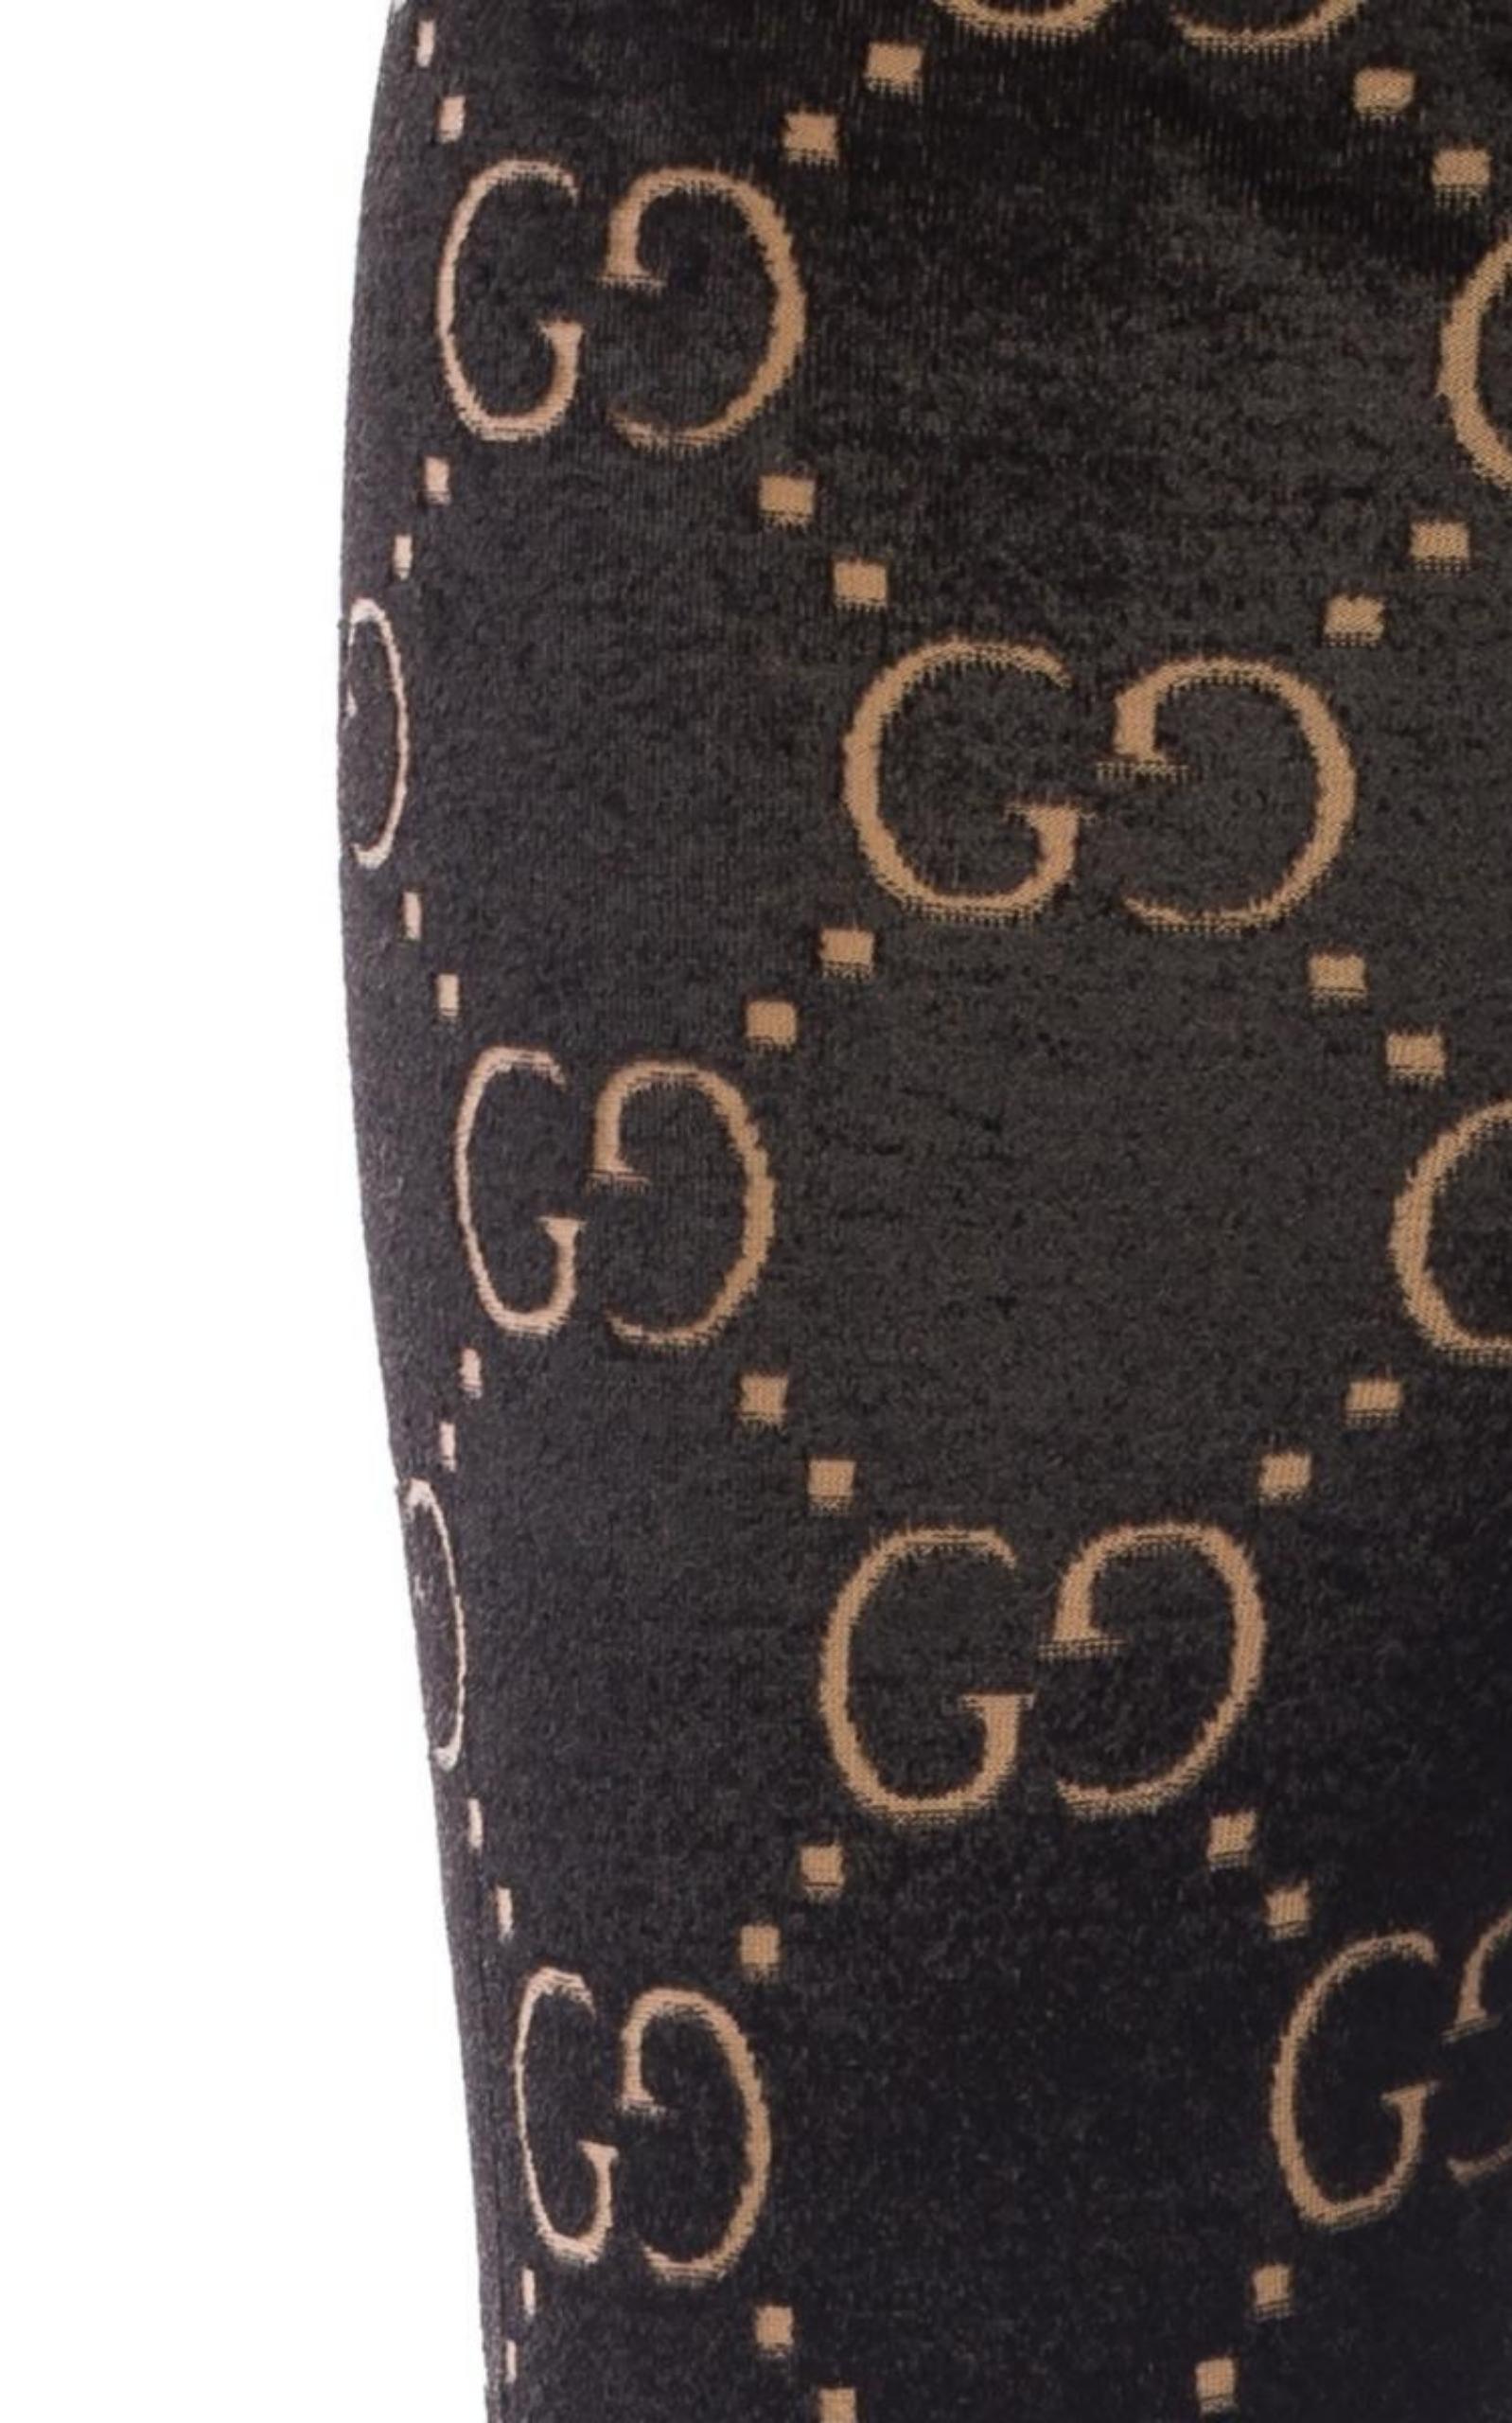 Gucci GG Monogram Tights in Black